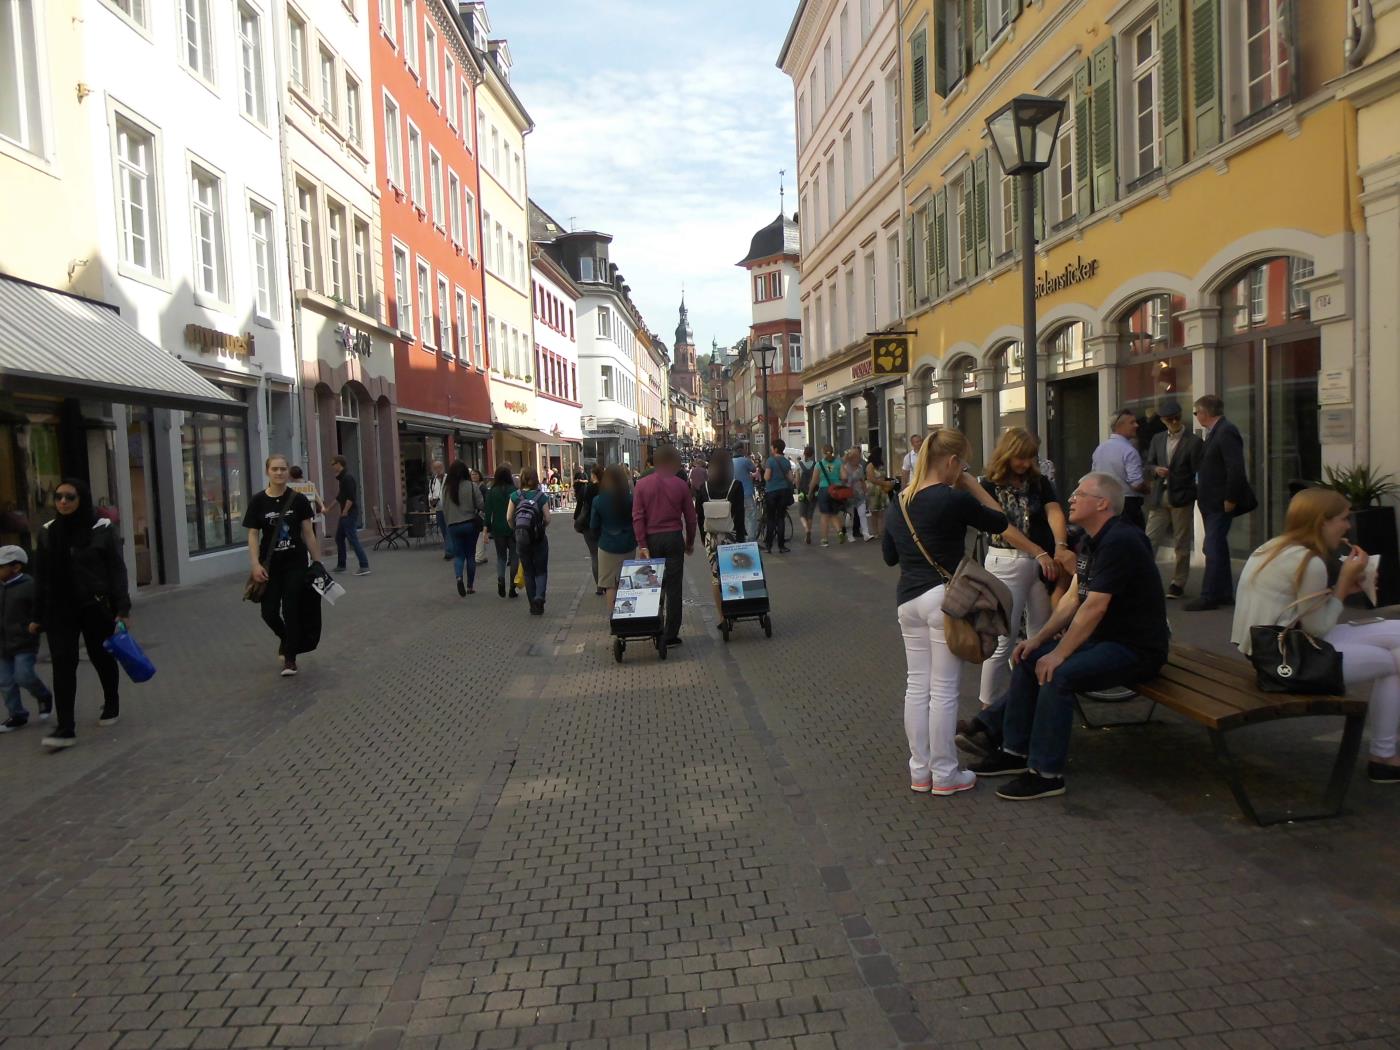 Jehovah's Witnesses in Heidelberg were ashamed